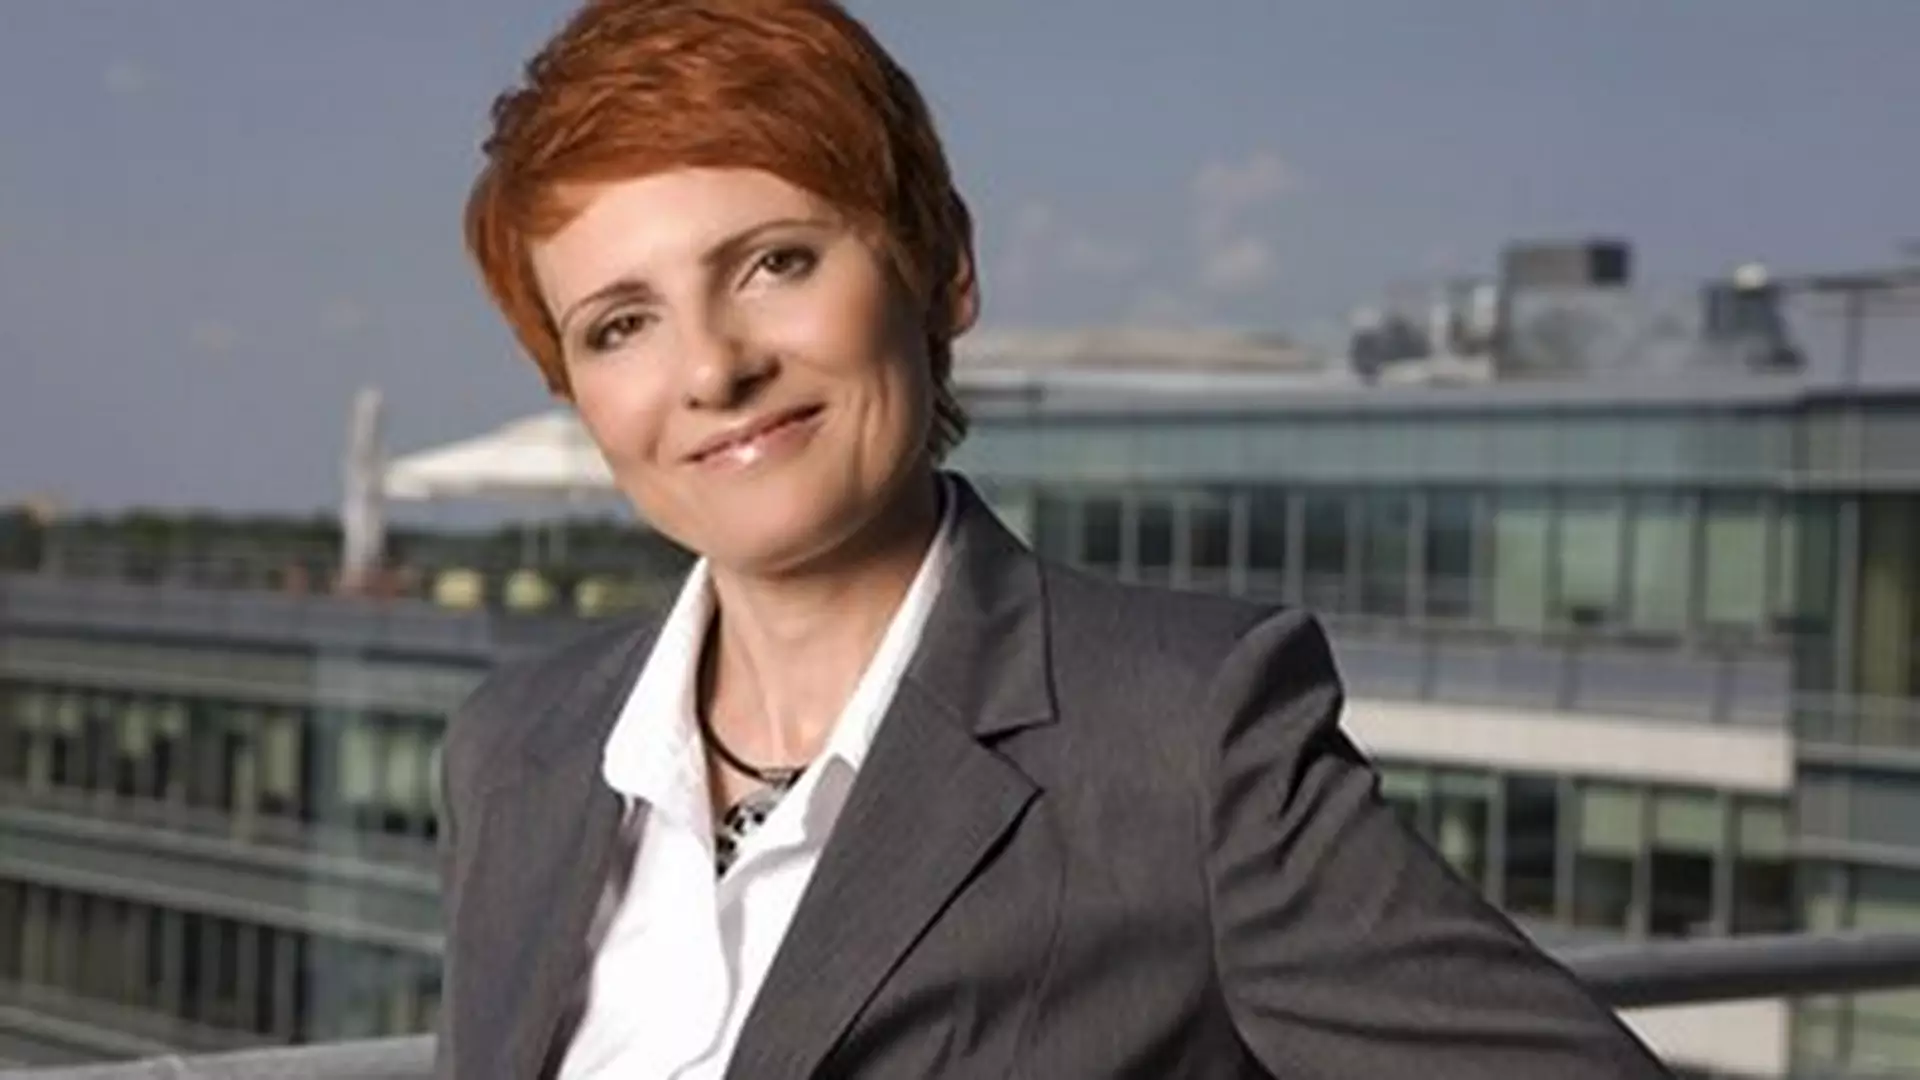 Dyrektor finansowa E.Sadowska: kobiecy sukces w męskim świecie